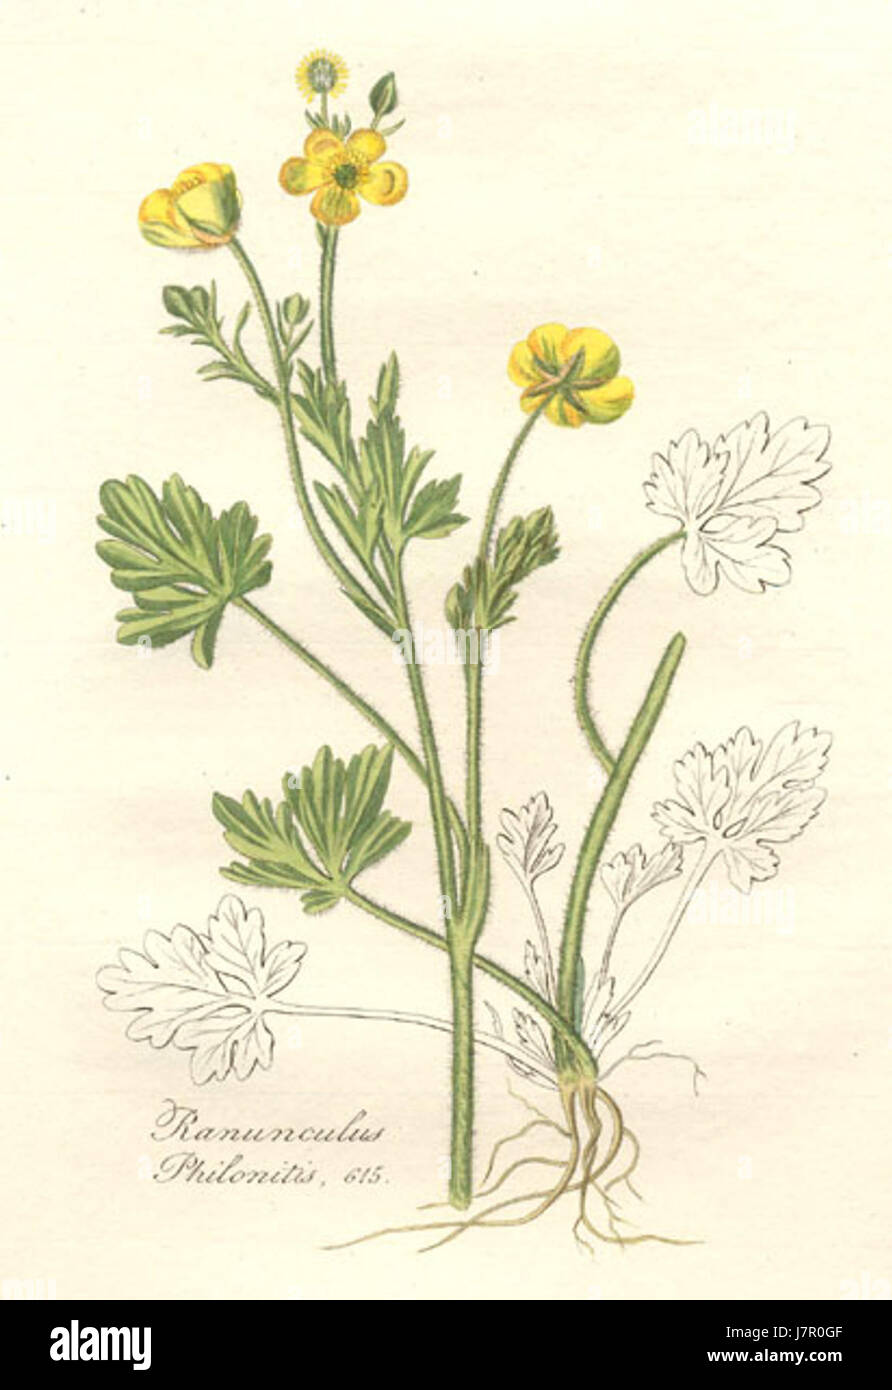 19896.Ranunculaceae   Ranunculus philonotis Stock Photo